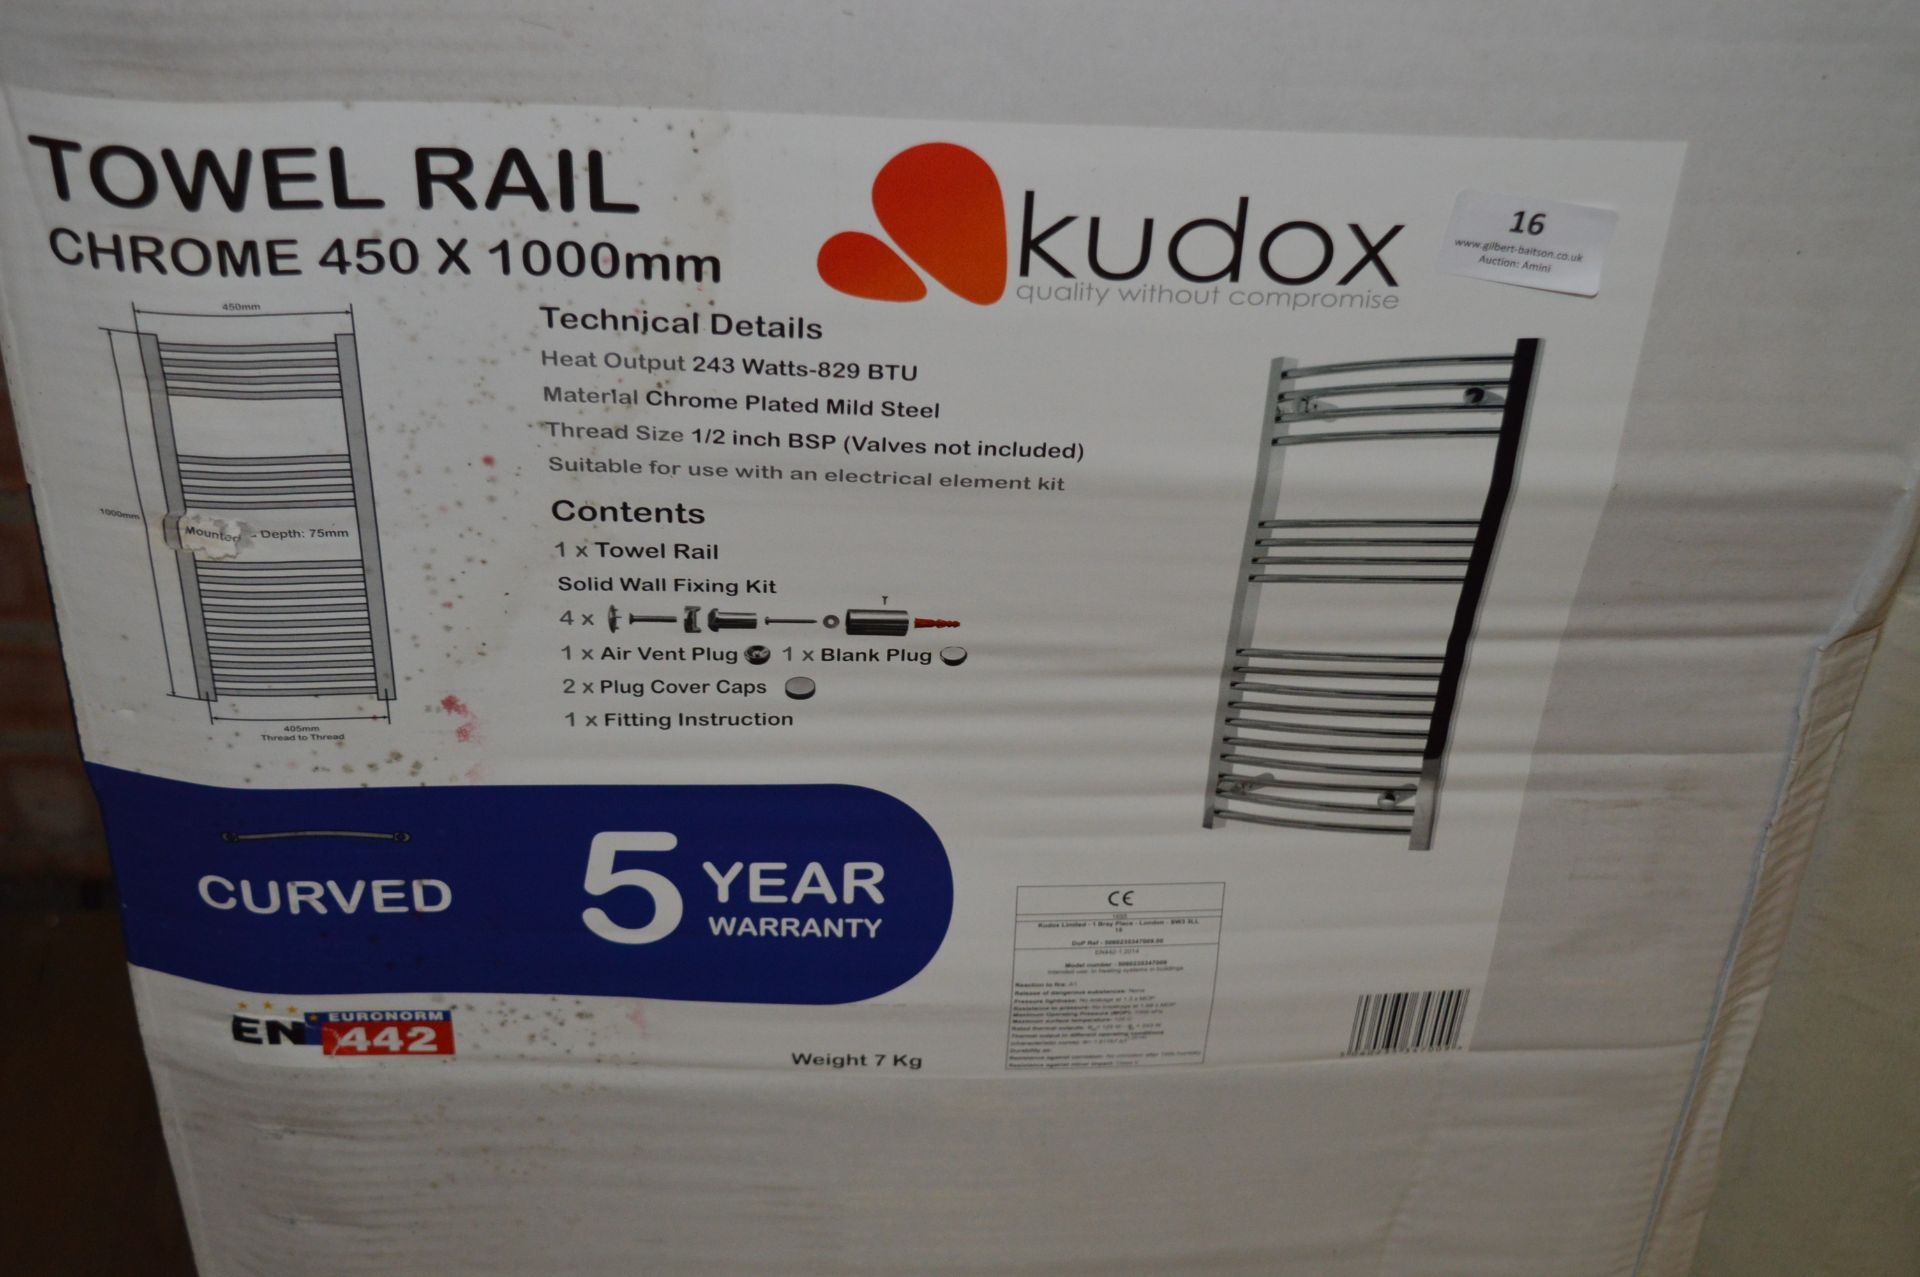 *Kudox 450x1100mm Chrome Towel Rail